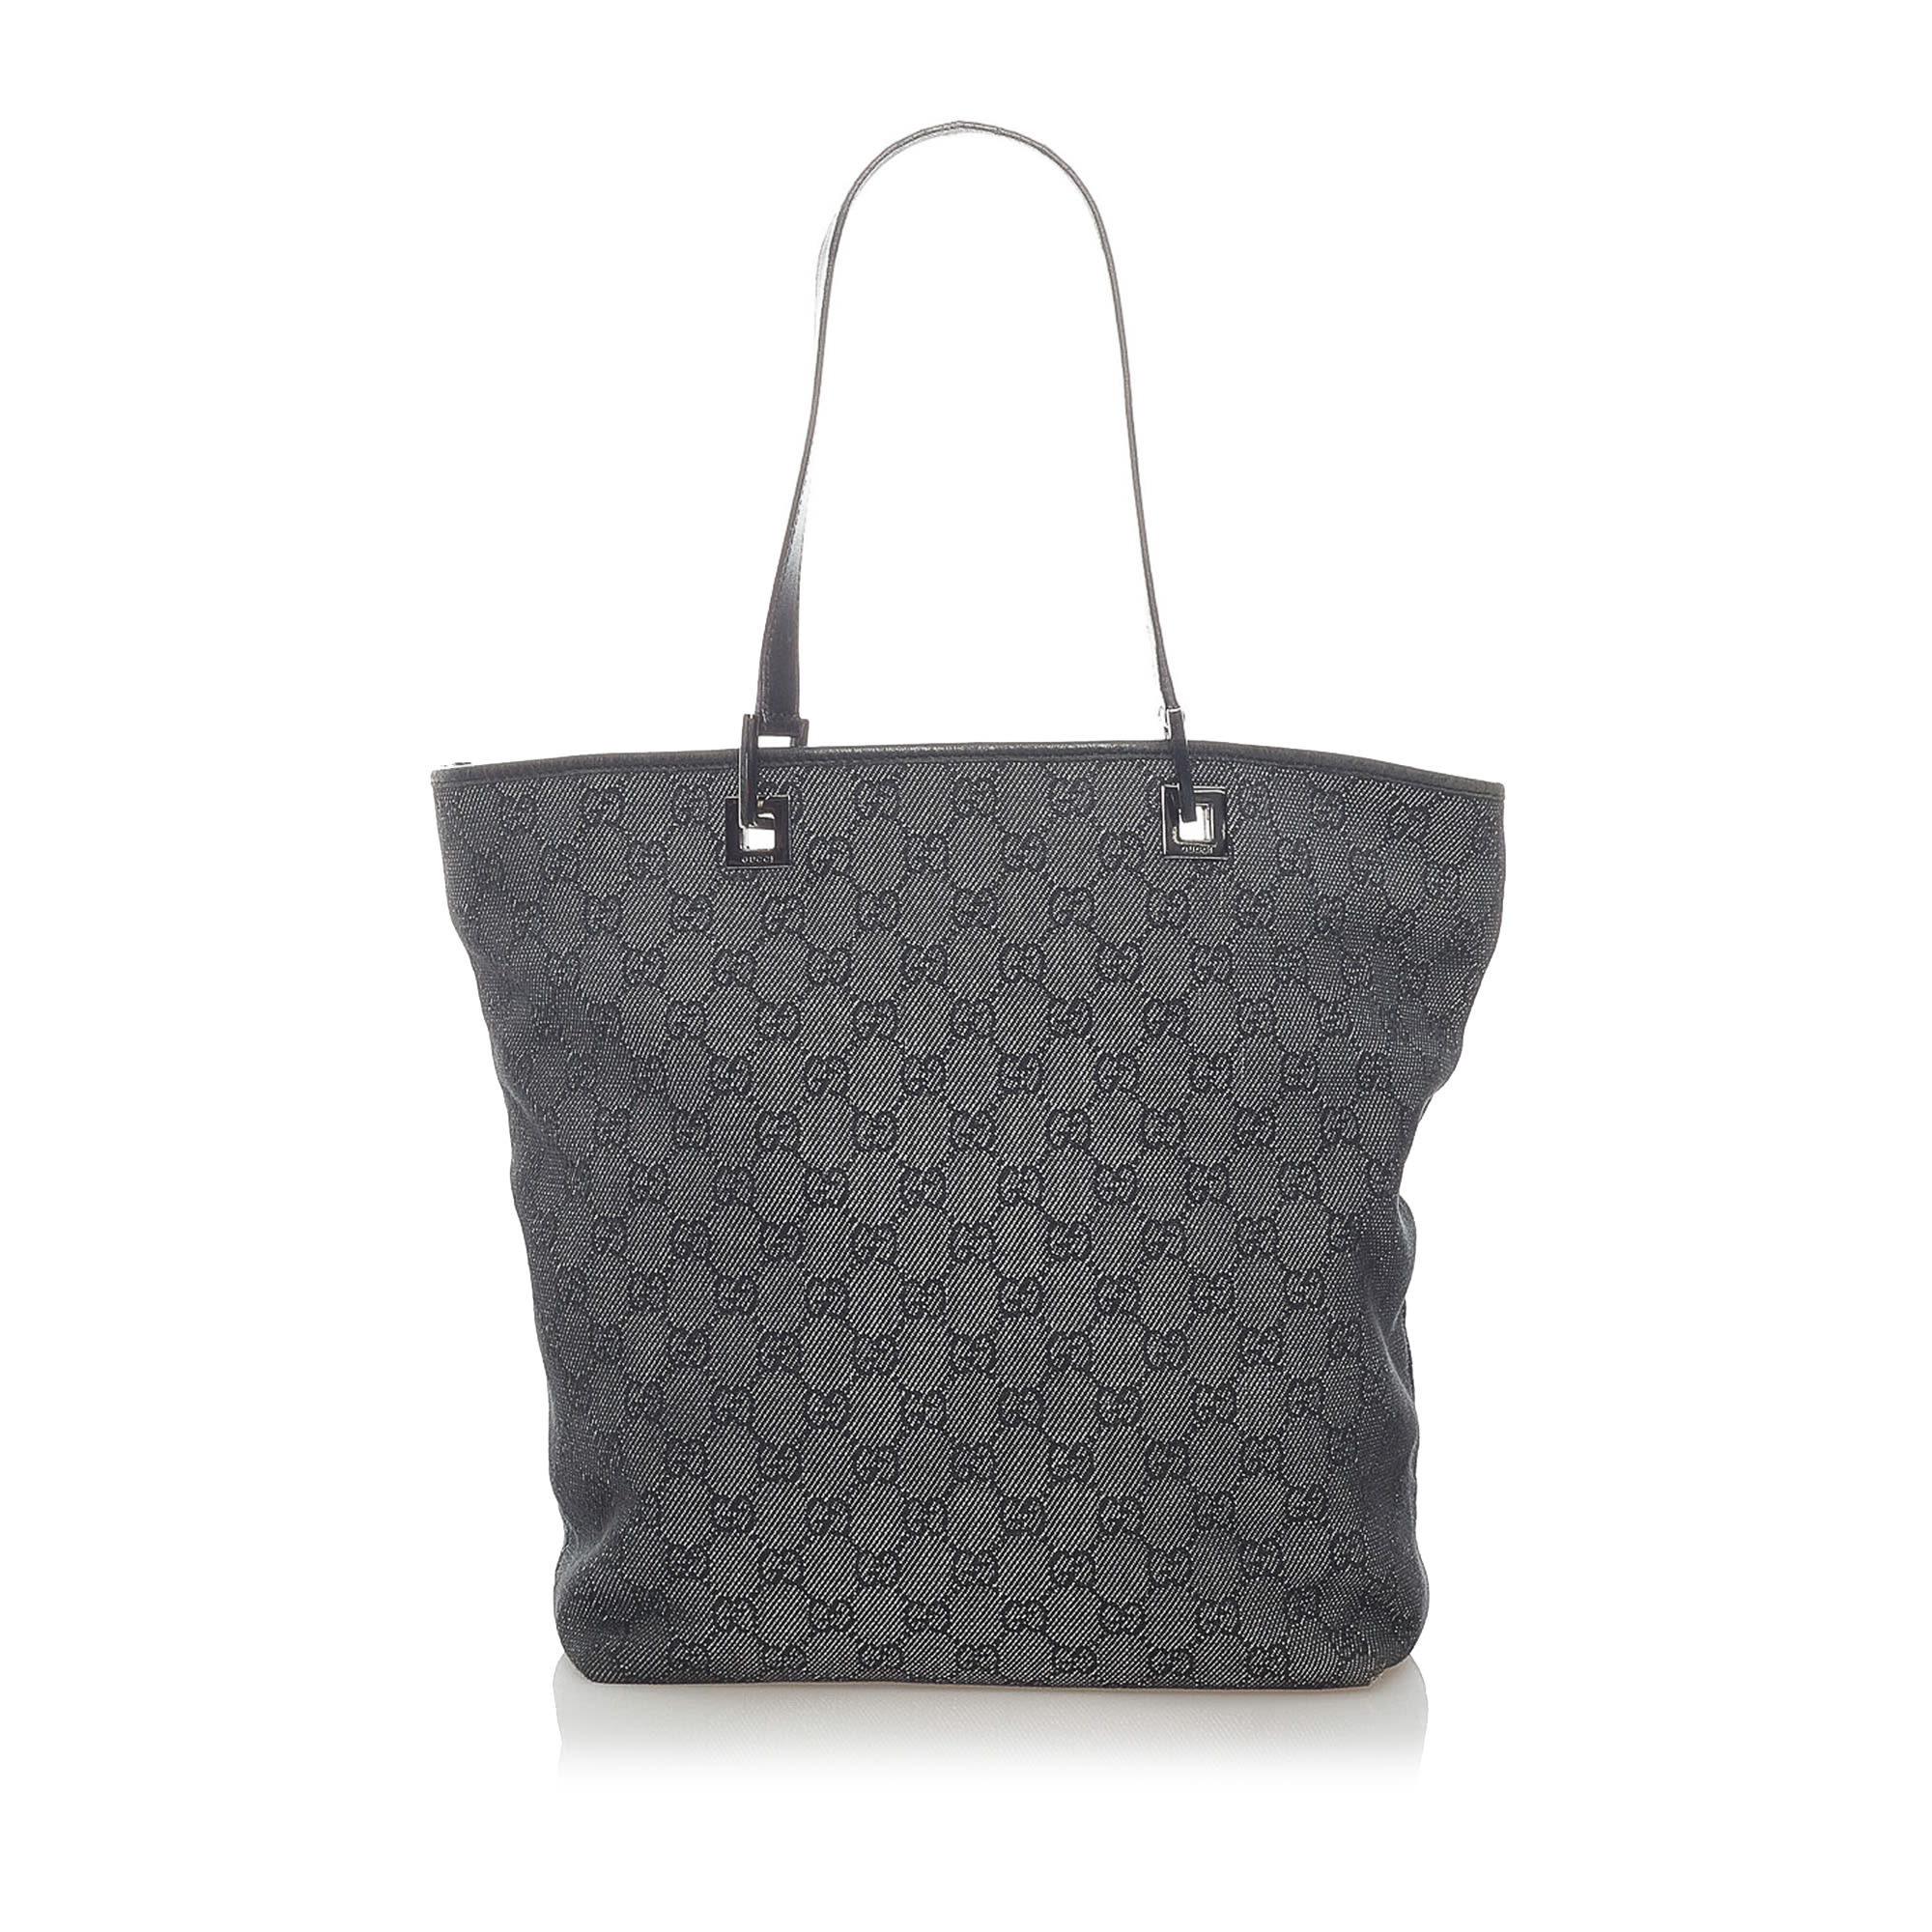 Gucci Gg Canvas Tote Bag, dark gray